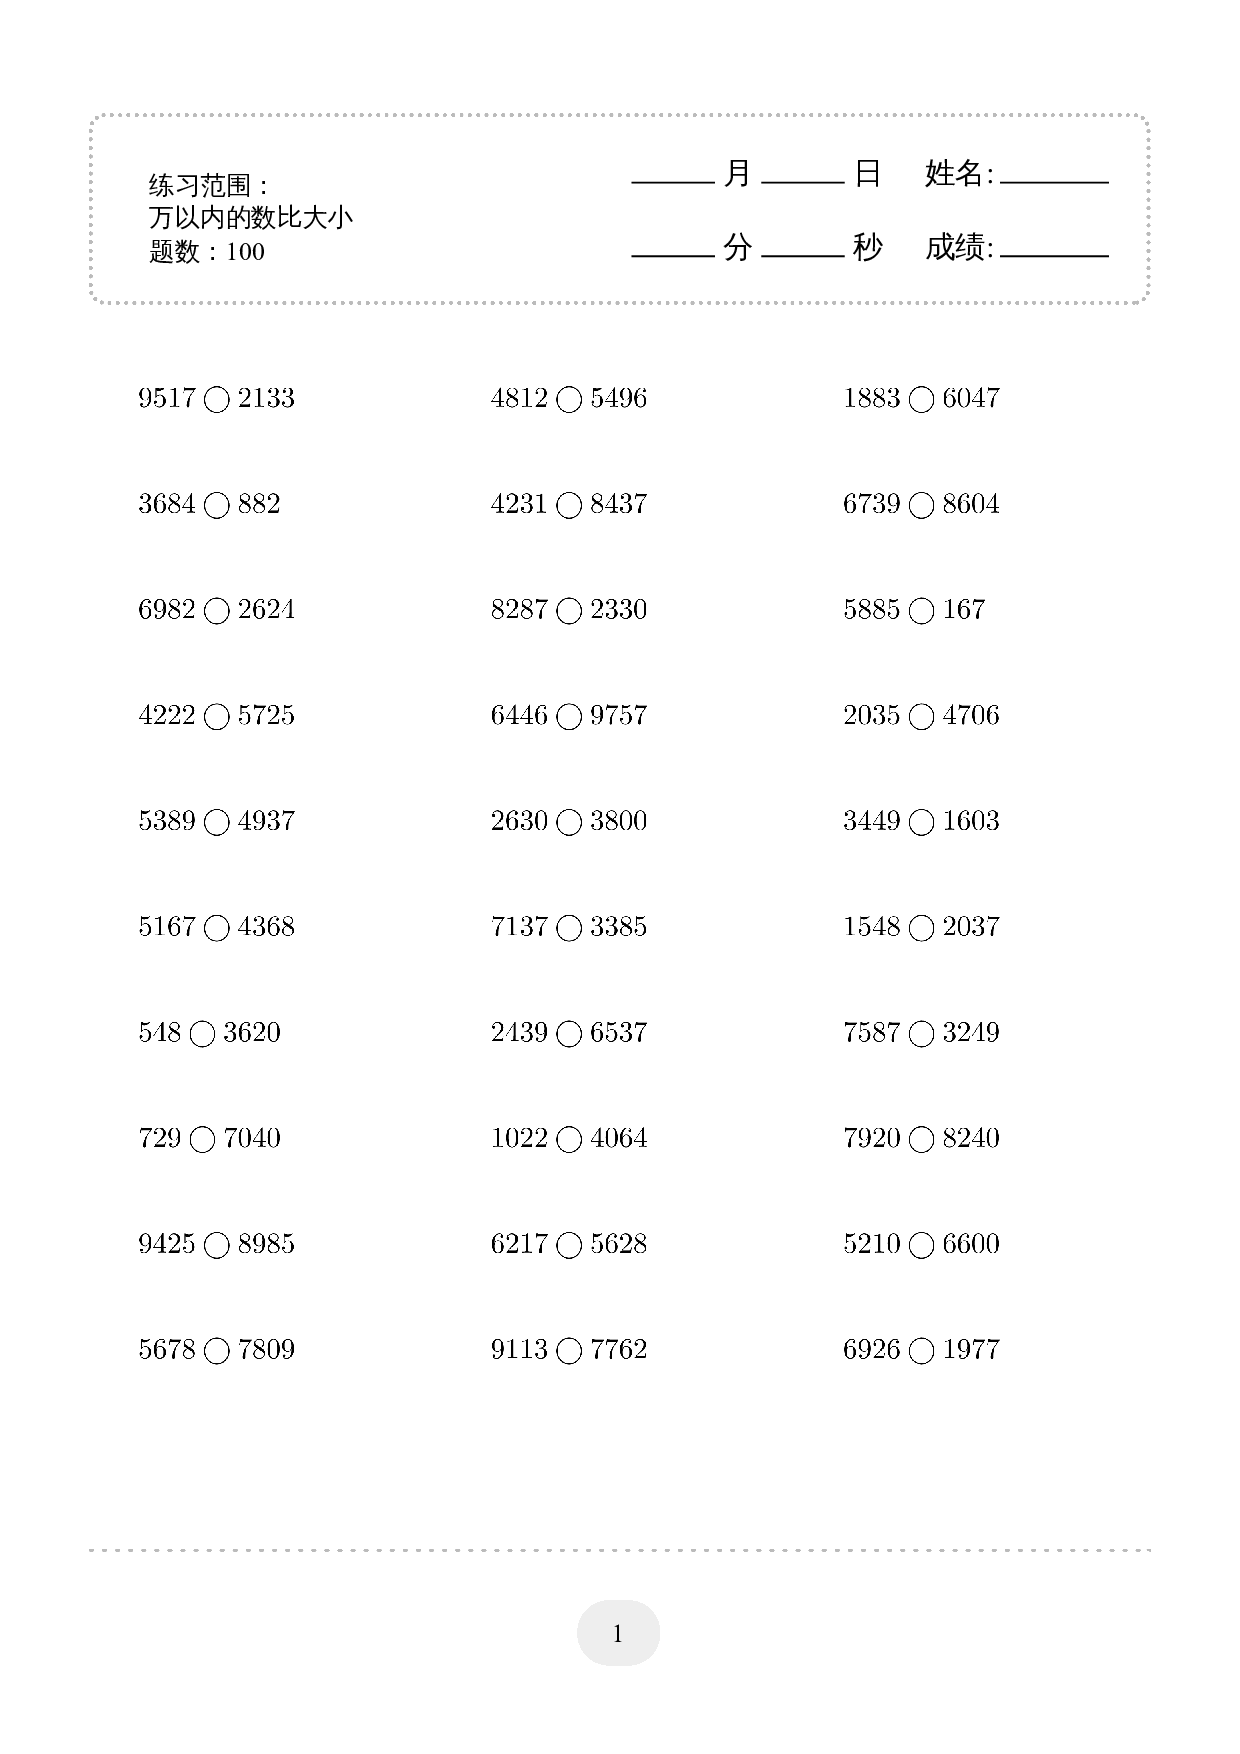 2年级下册数学口算题 (万以内的数比大小) 500题